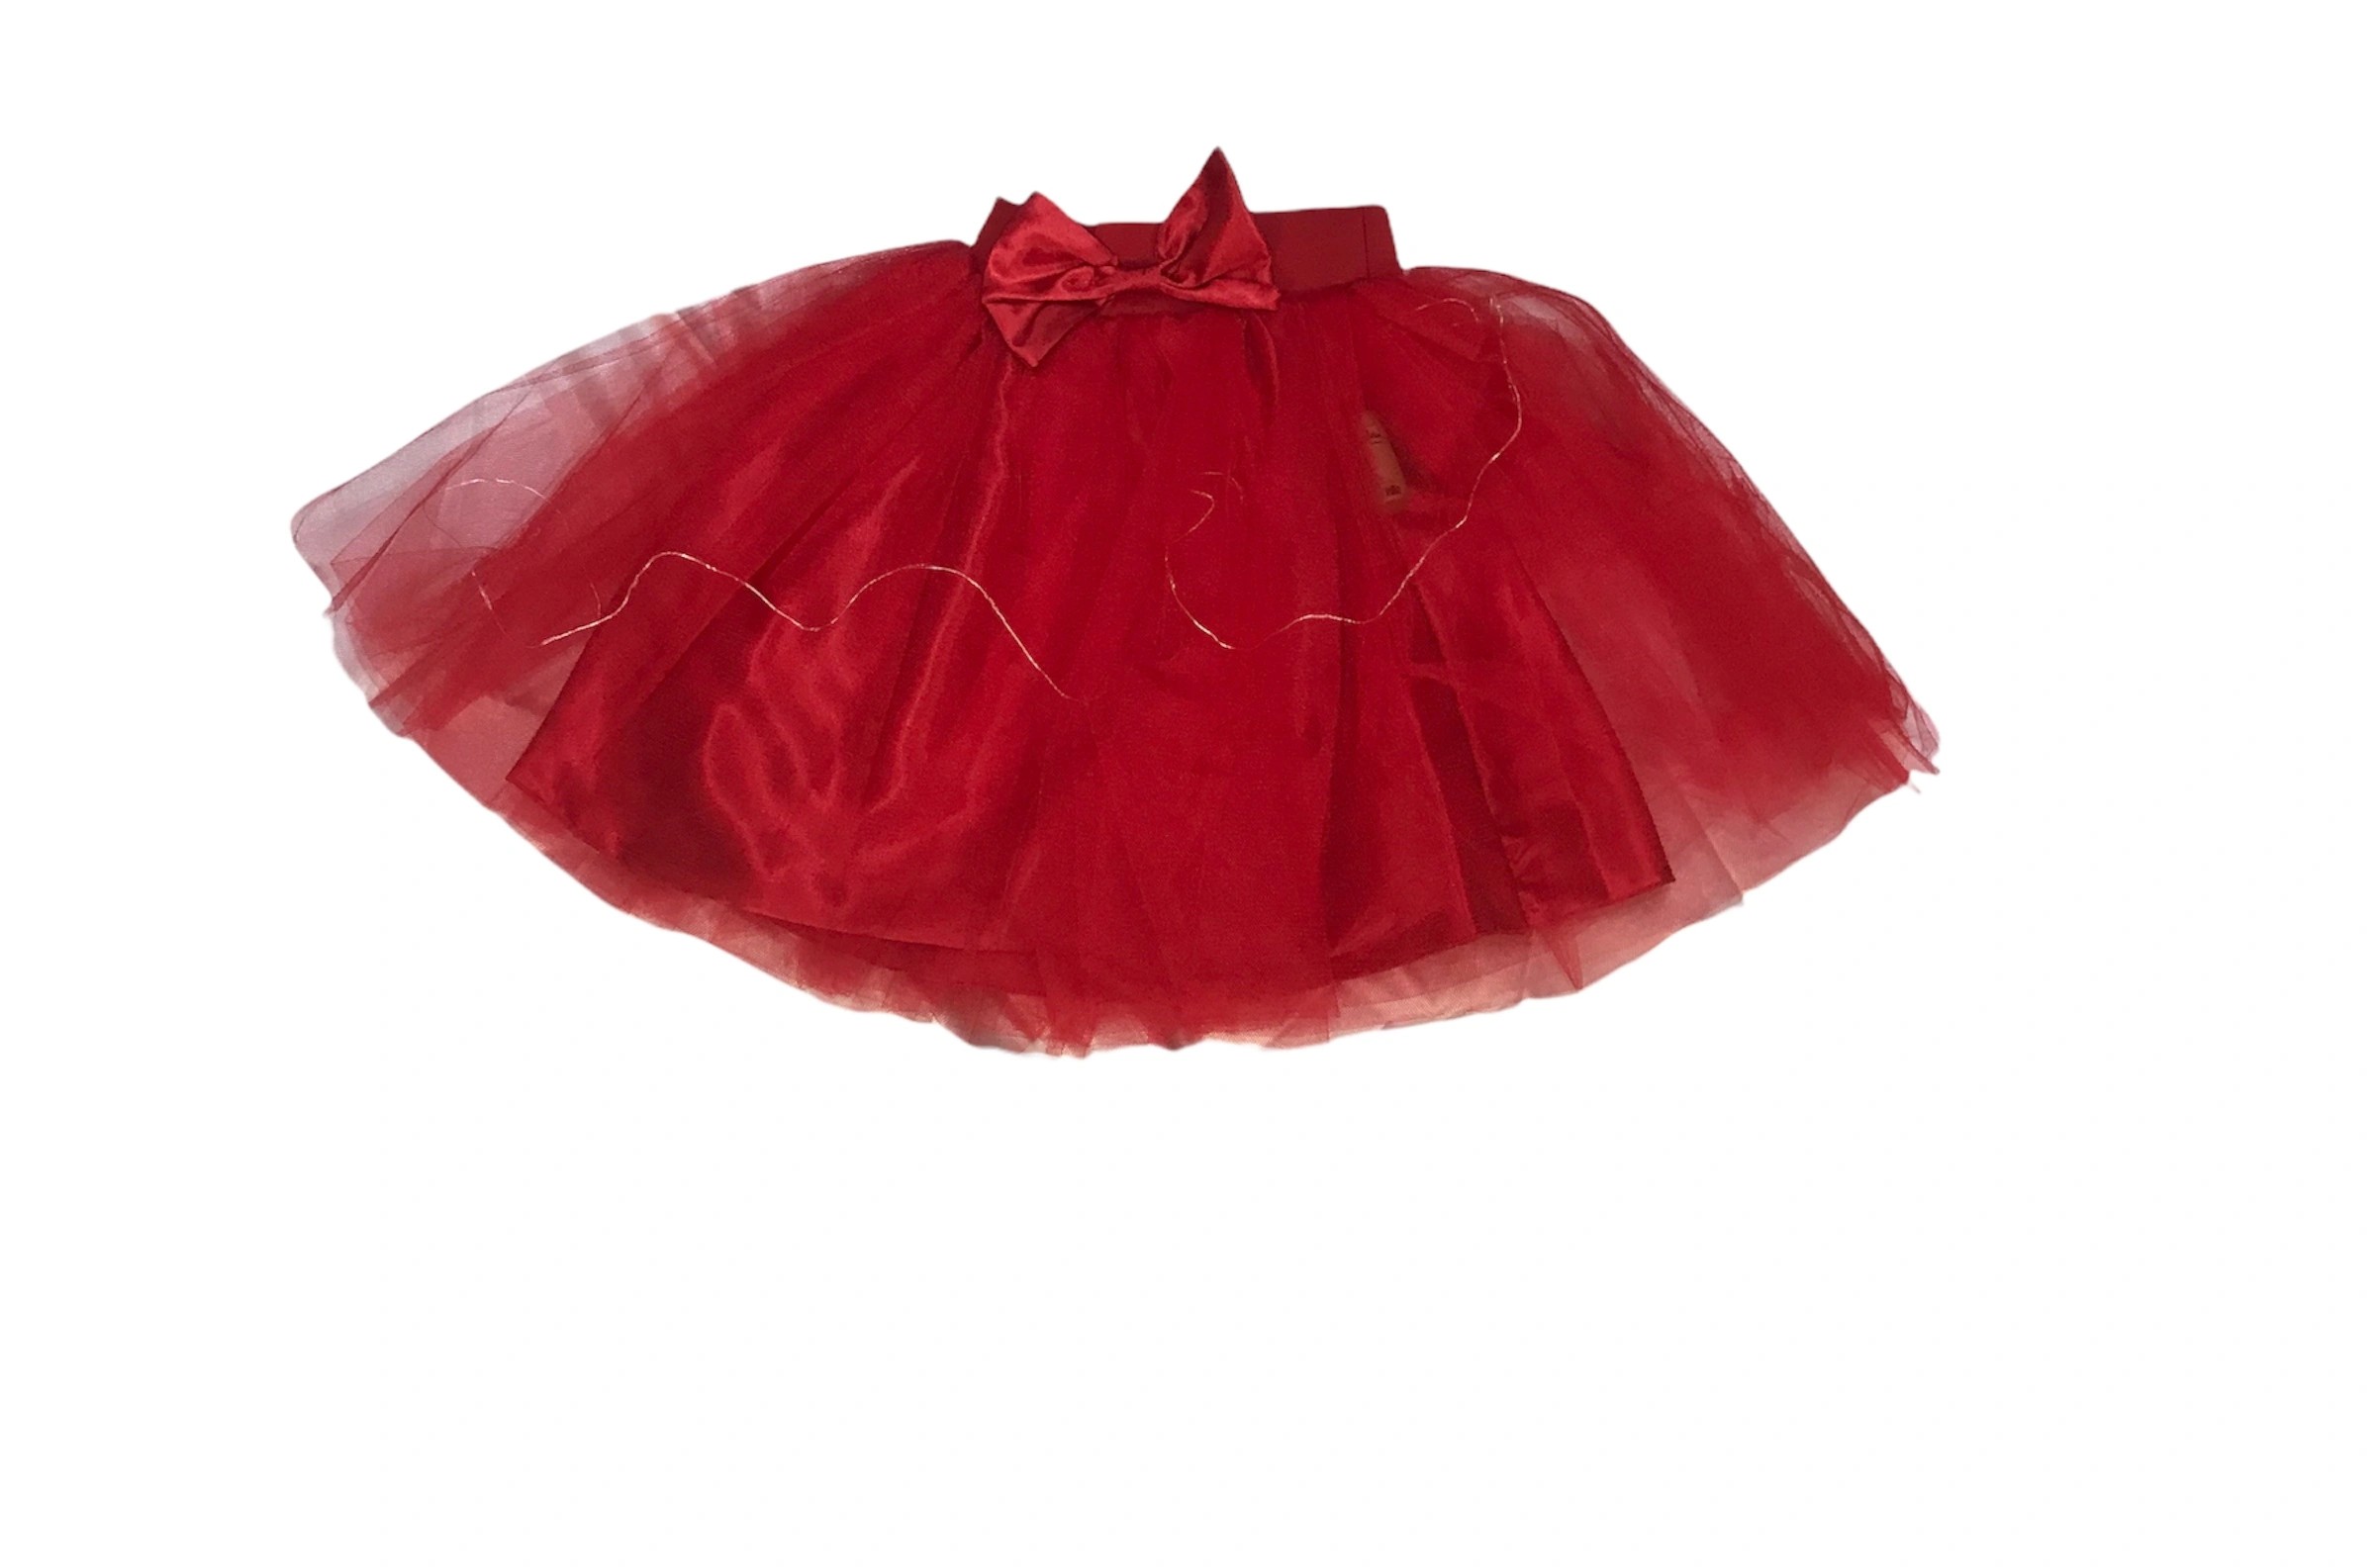 Soie Cotton Kız Çocuk Işıklı Tütü Etek  - Kırmızı - 10000187410